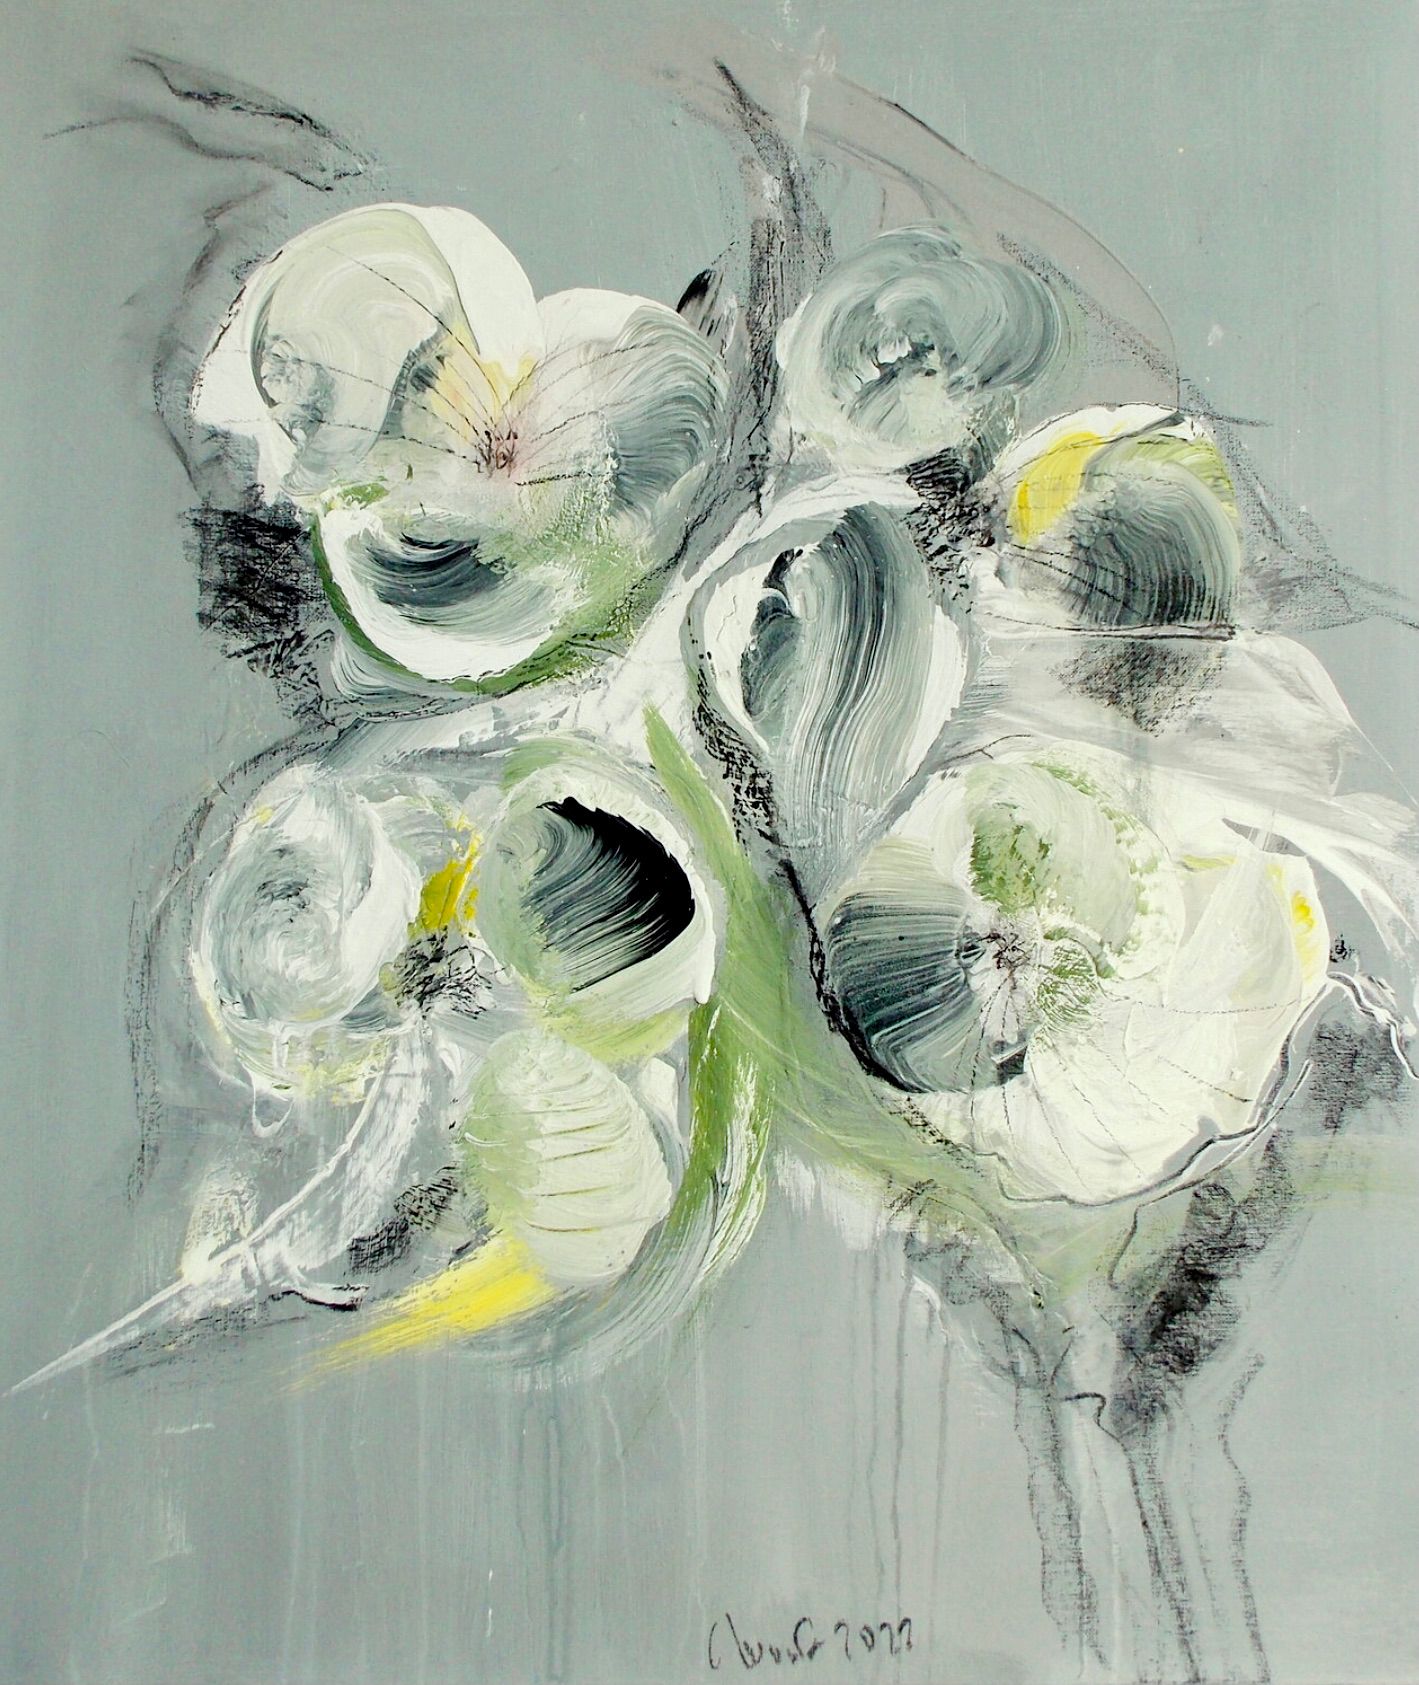 Nel dipinto floreale astratto espressionista "Blumenrausch 2" di Christa Haack dominano i colori beige, verde e nero.